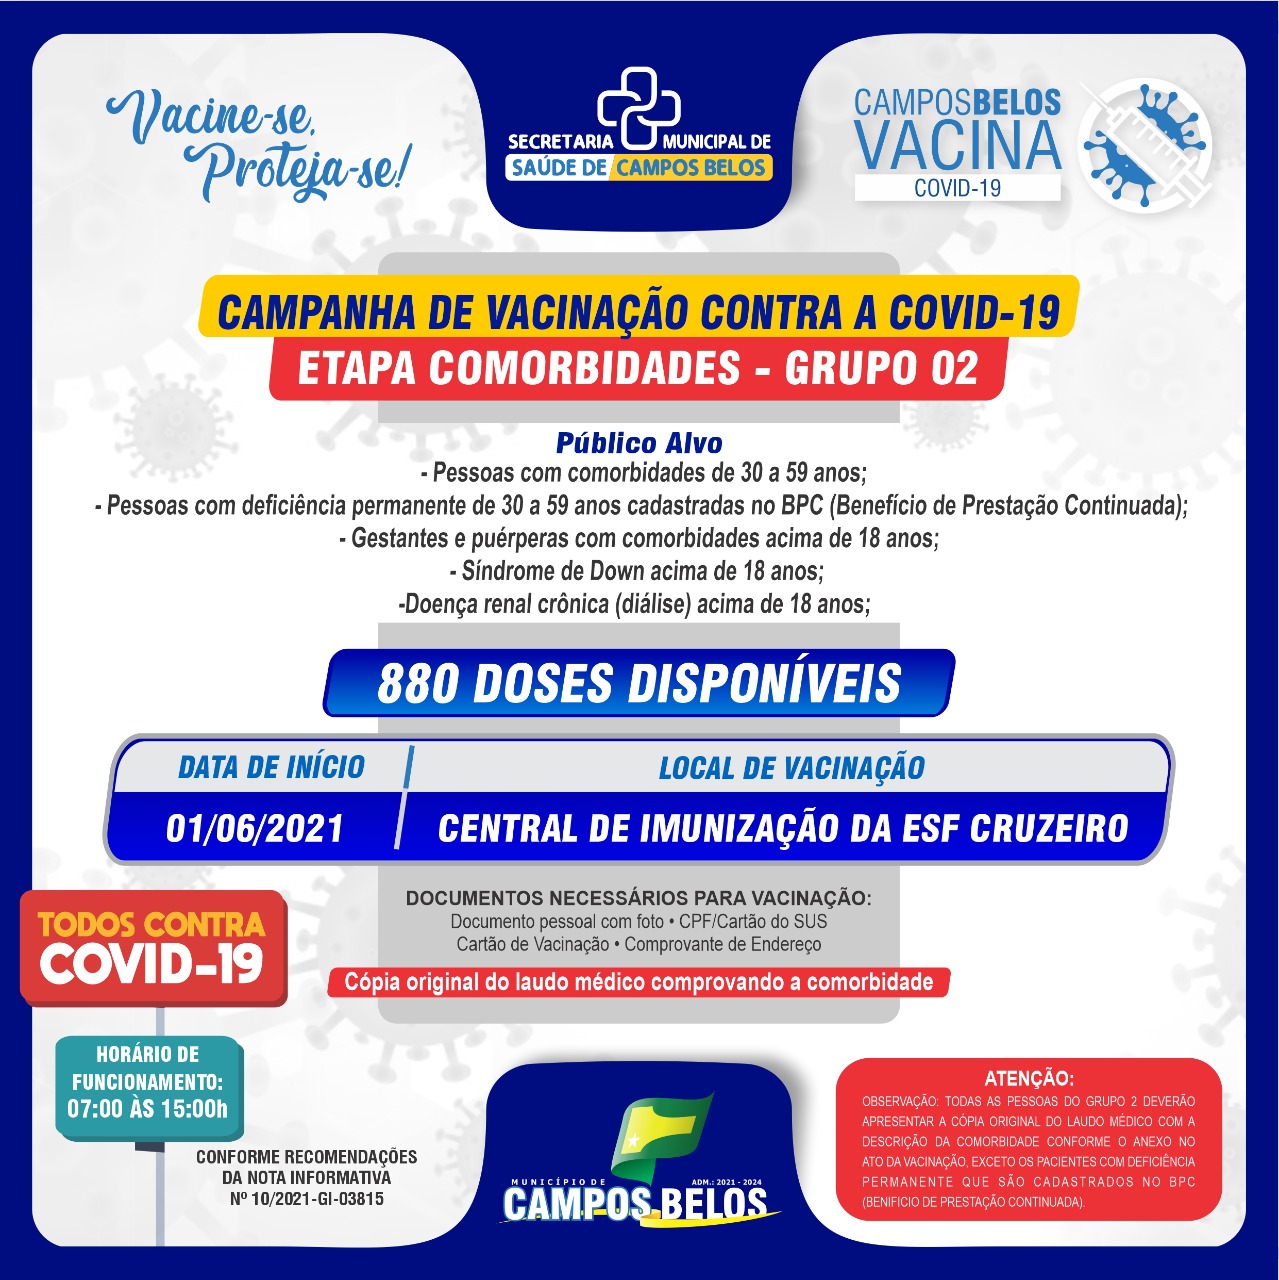 700 doses de vacinas sobrando em Campos Belos (GO)